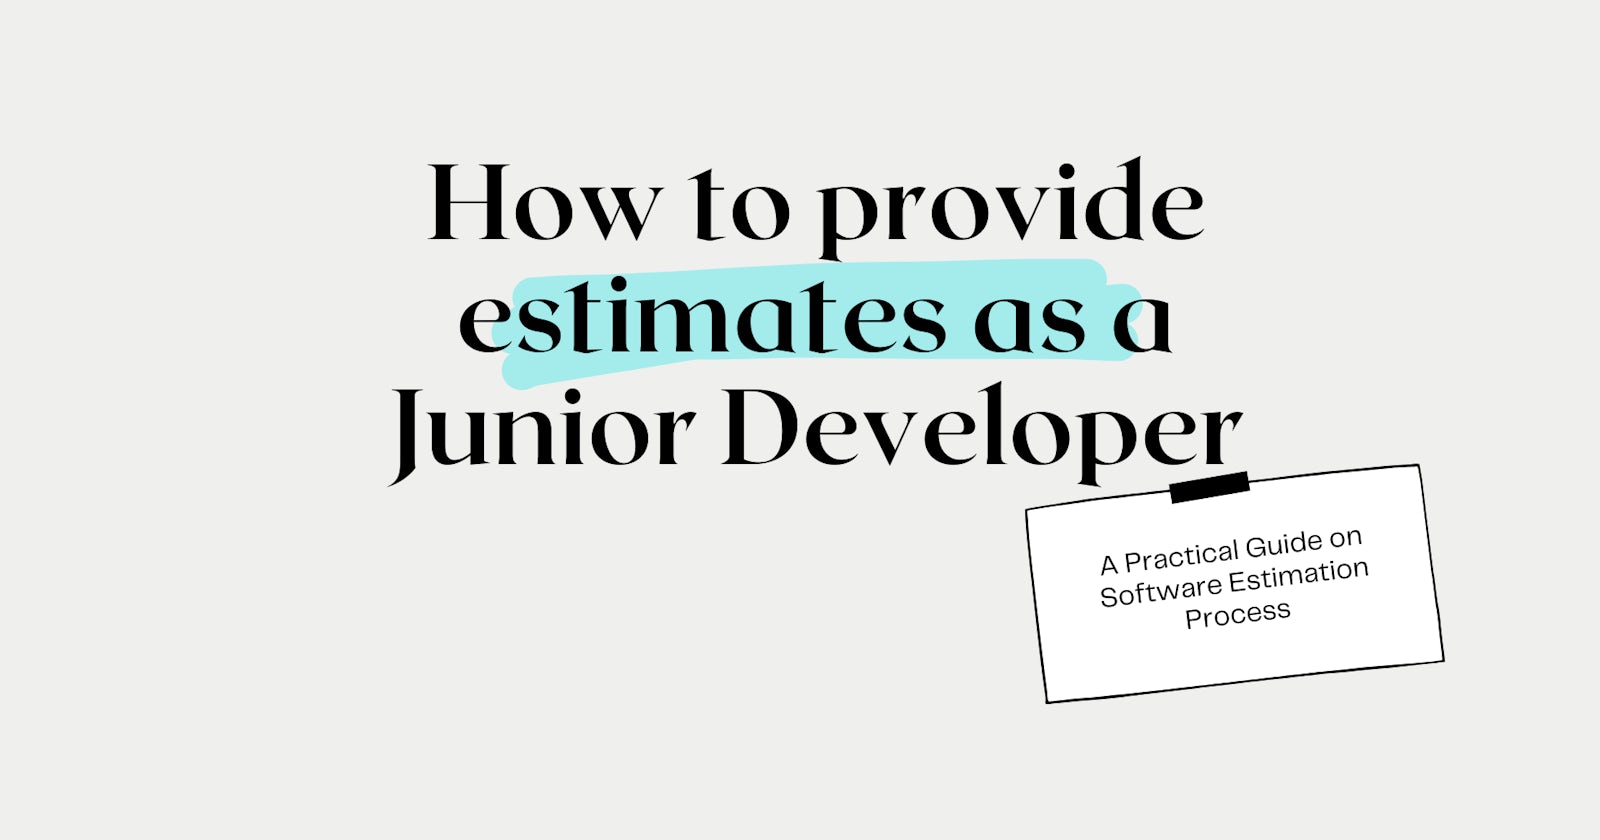 How to provide estimates as a Junior Developer?